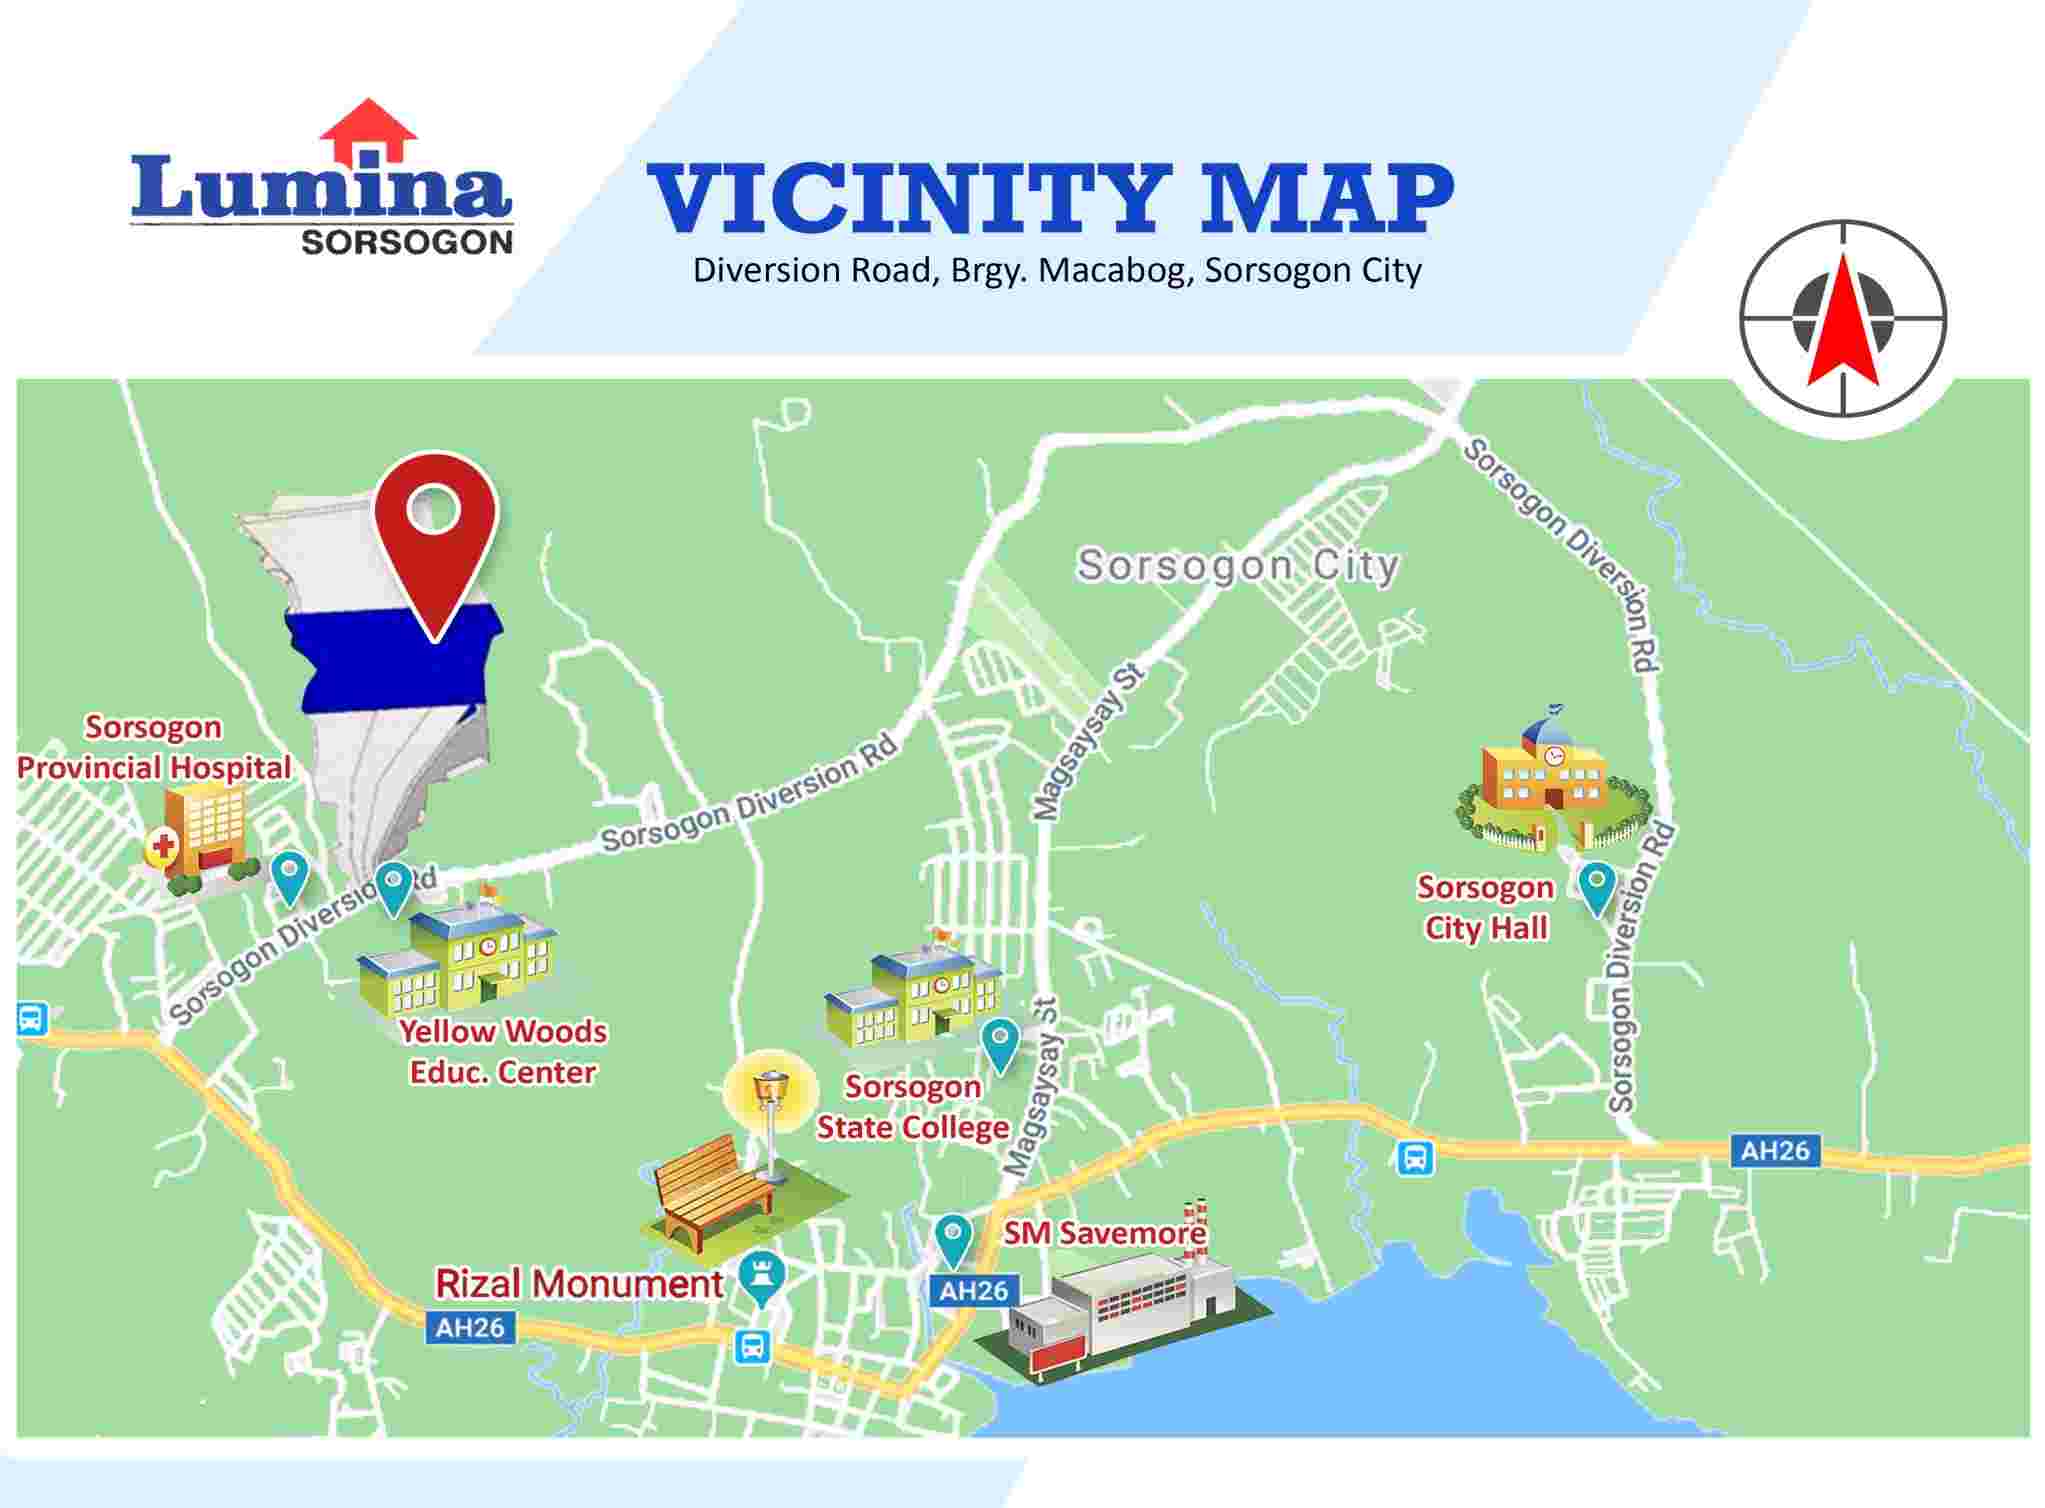 Vicinity-Map-1707123410.jpeg